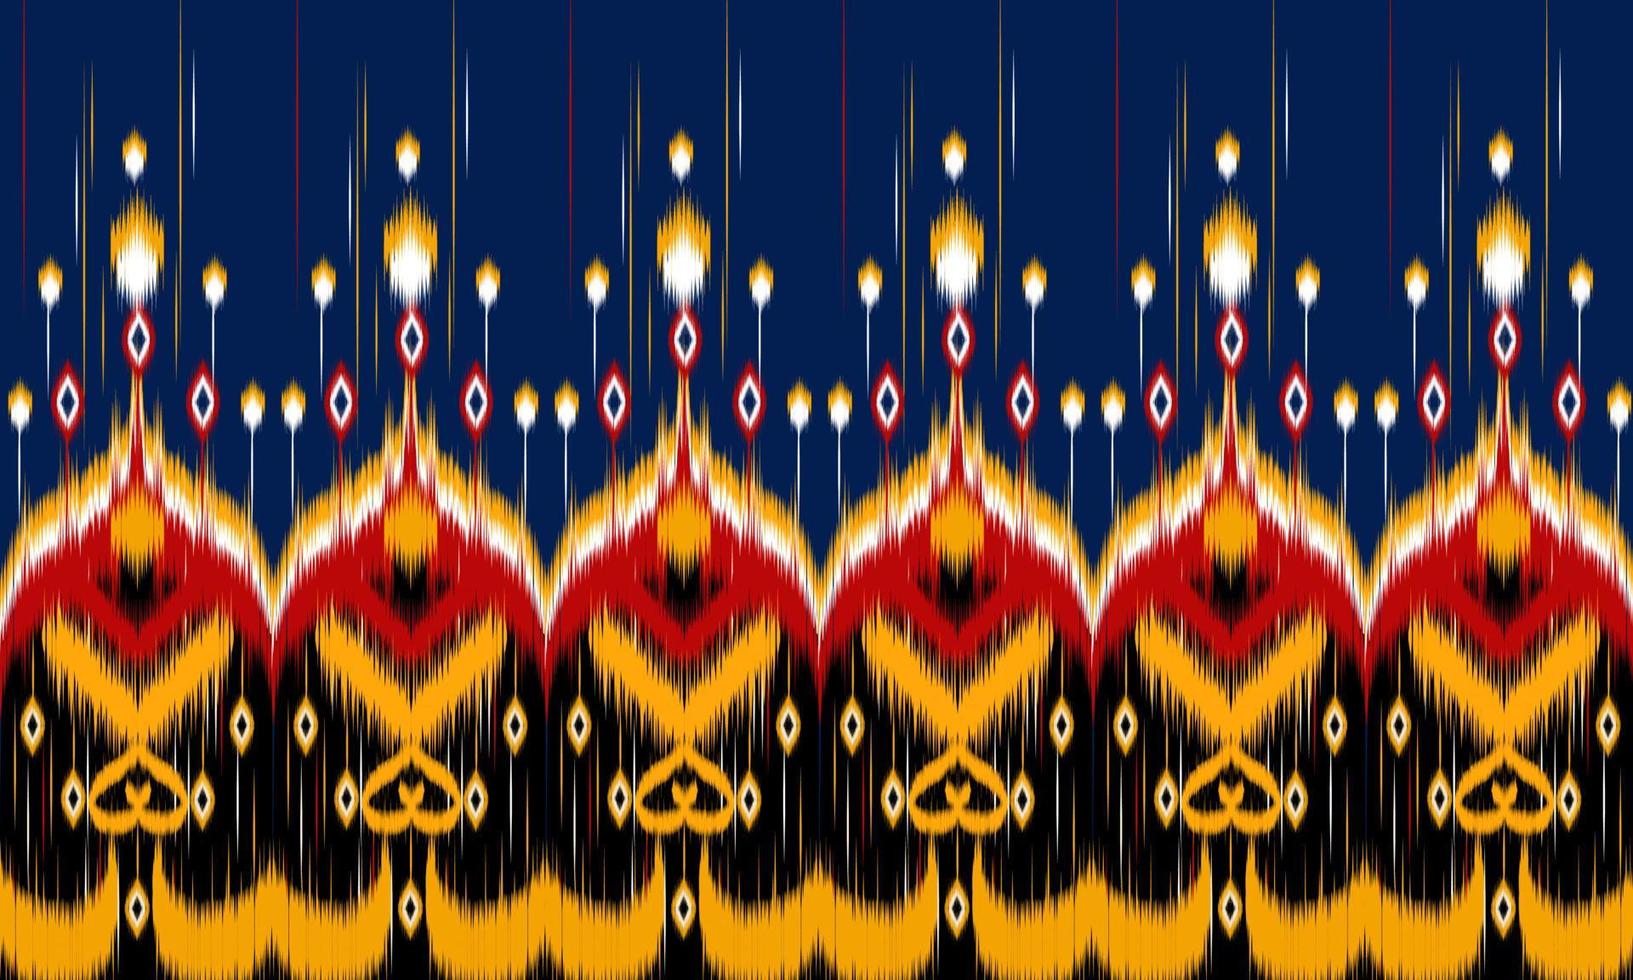 disegno tradizionale geometrico etnico orientale modello ikat per sfondo, moquette, carta da parati, abbigliamento, avvolgimento, batik, tessuto, illustrazione vettoriale. stile ricamo. vettore